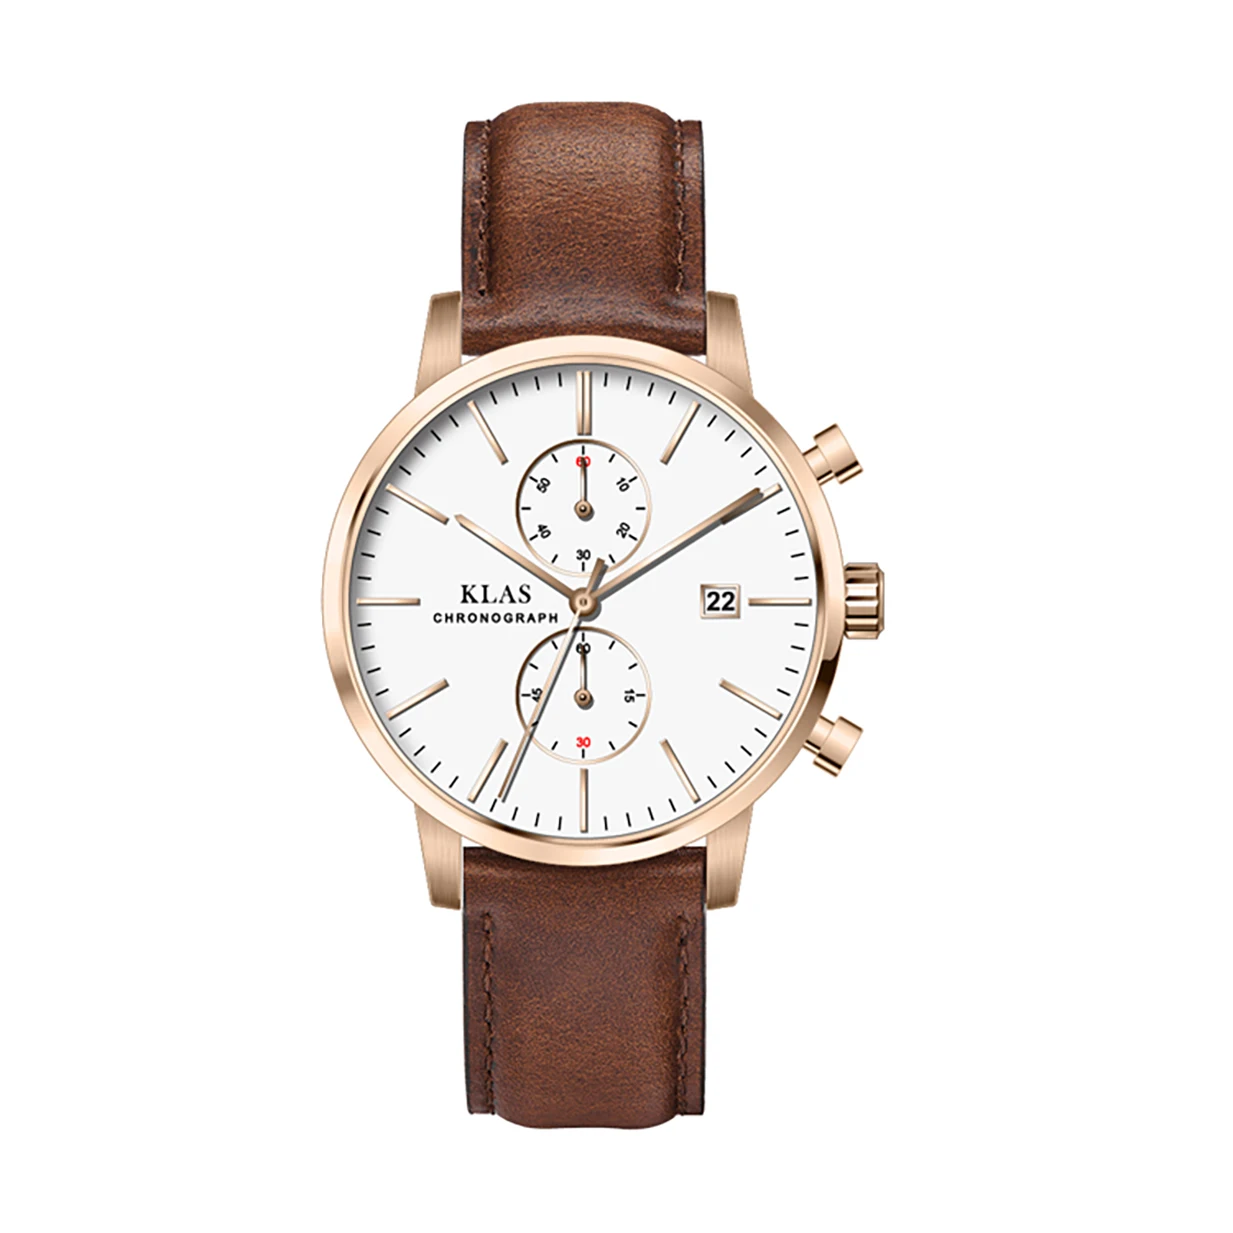 

Изящные кварцевые часы, часы с браслетом из нержавеющей стали, бренд KLAS для мужчин цевые наручные часы